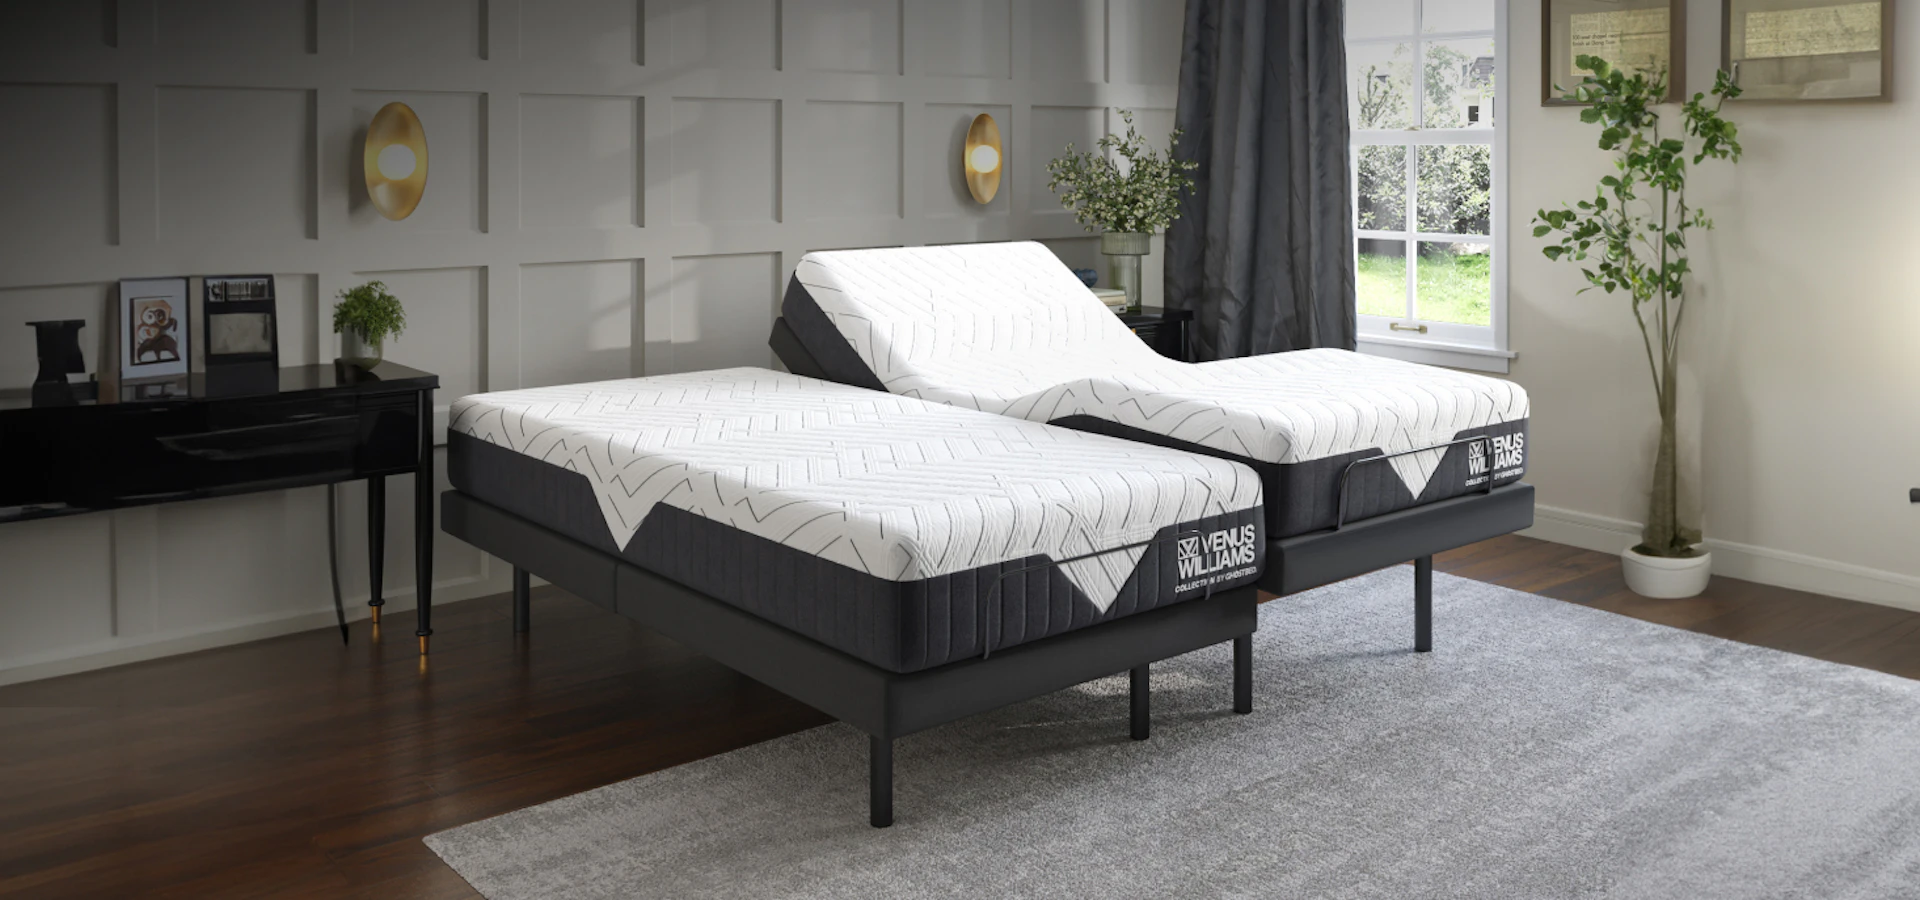 GhostBed Split King Mattress & Adjustable Bed Set